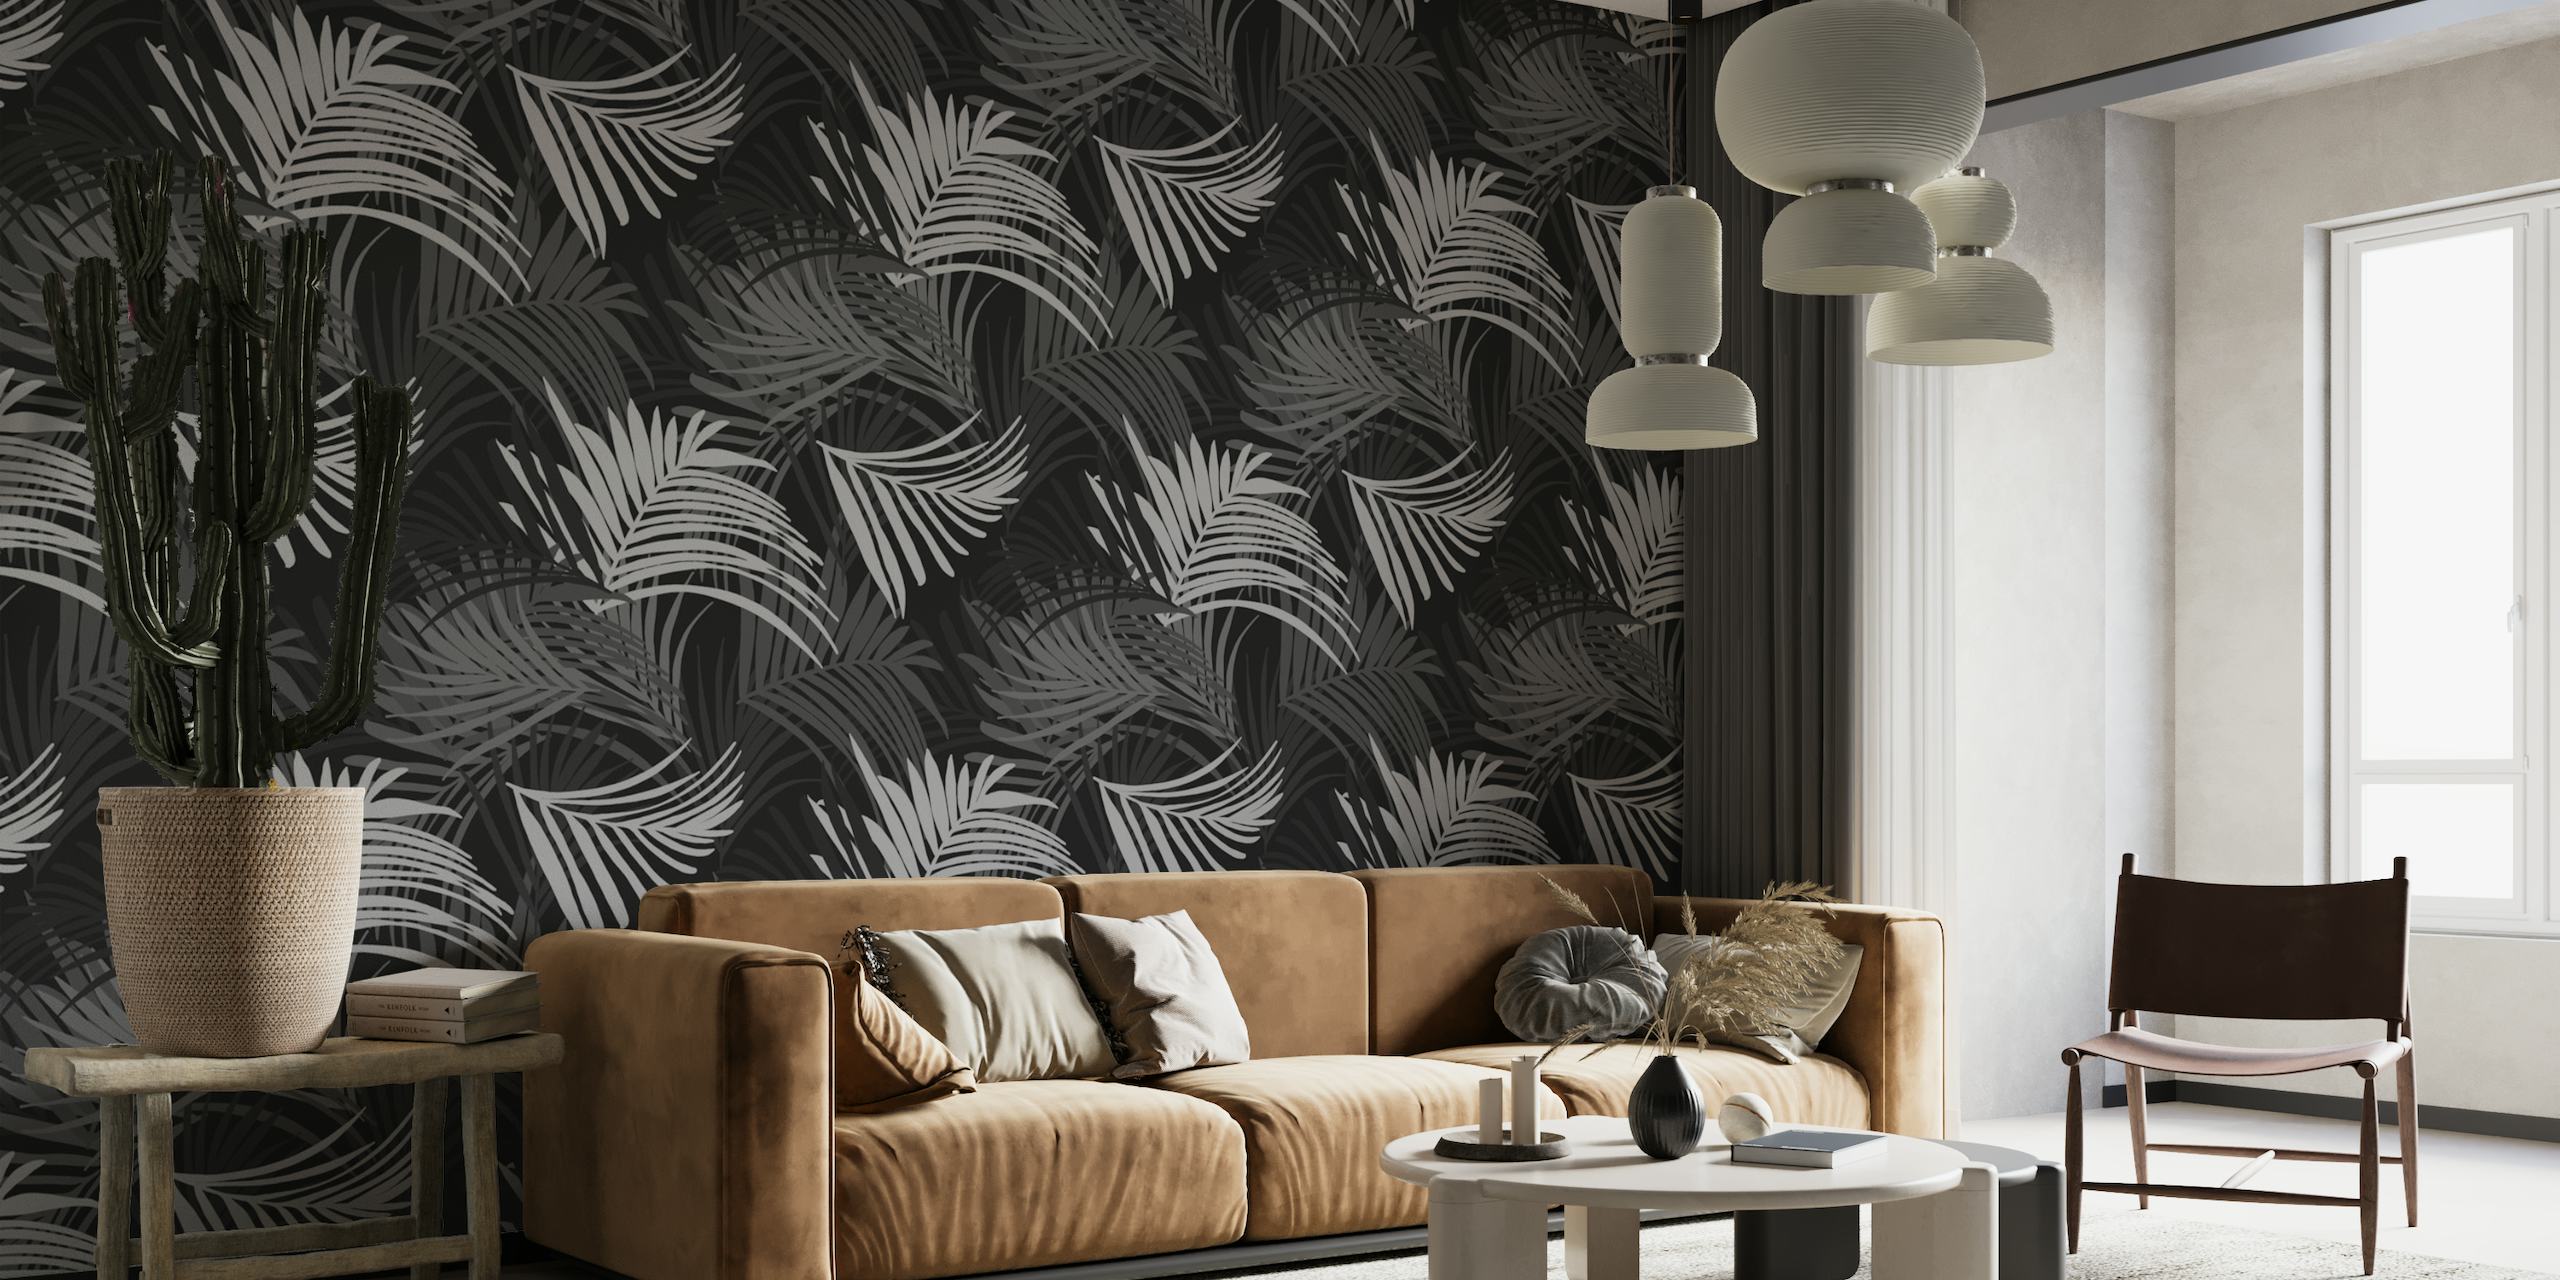 Schwarz-weiße Fototapete mit tropischem Palmblattmuster, perfekt für die Schaffung eines ruhigen Dschungelthemas.